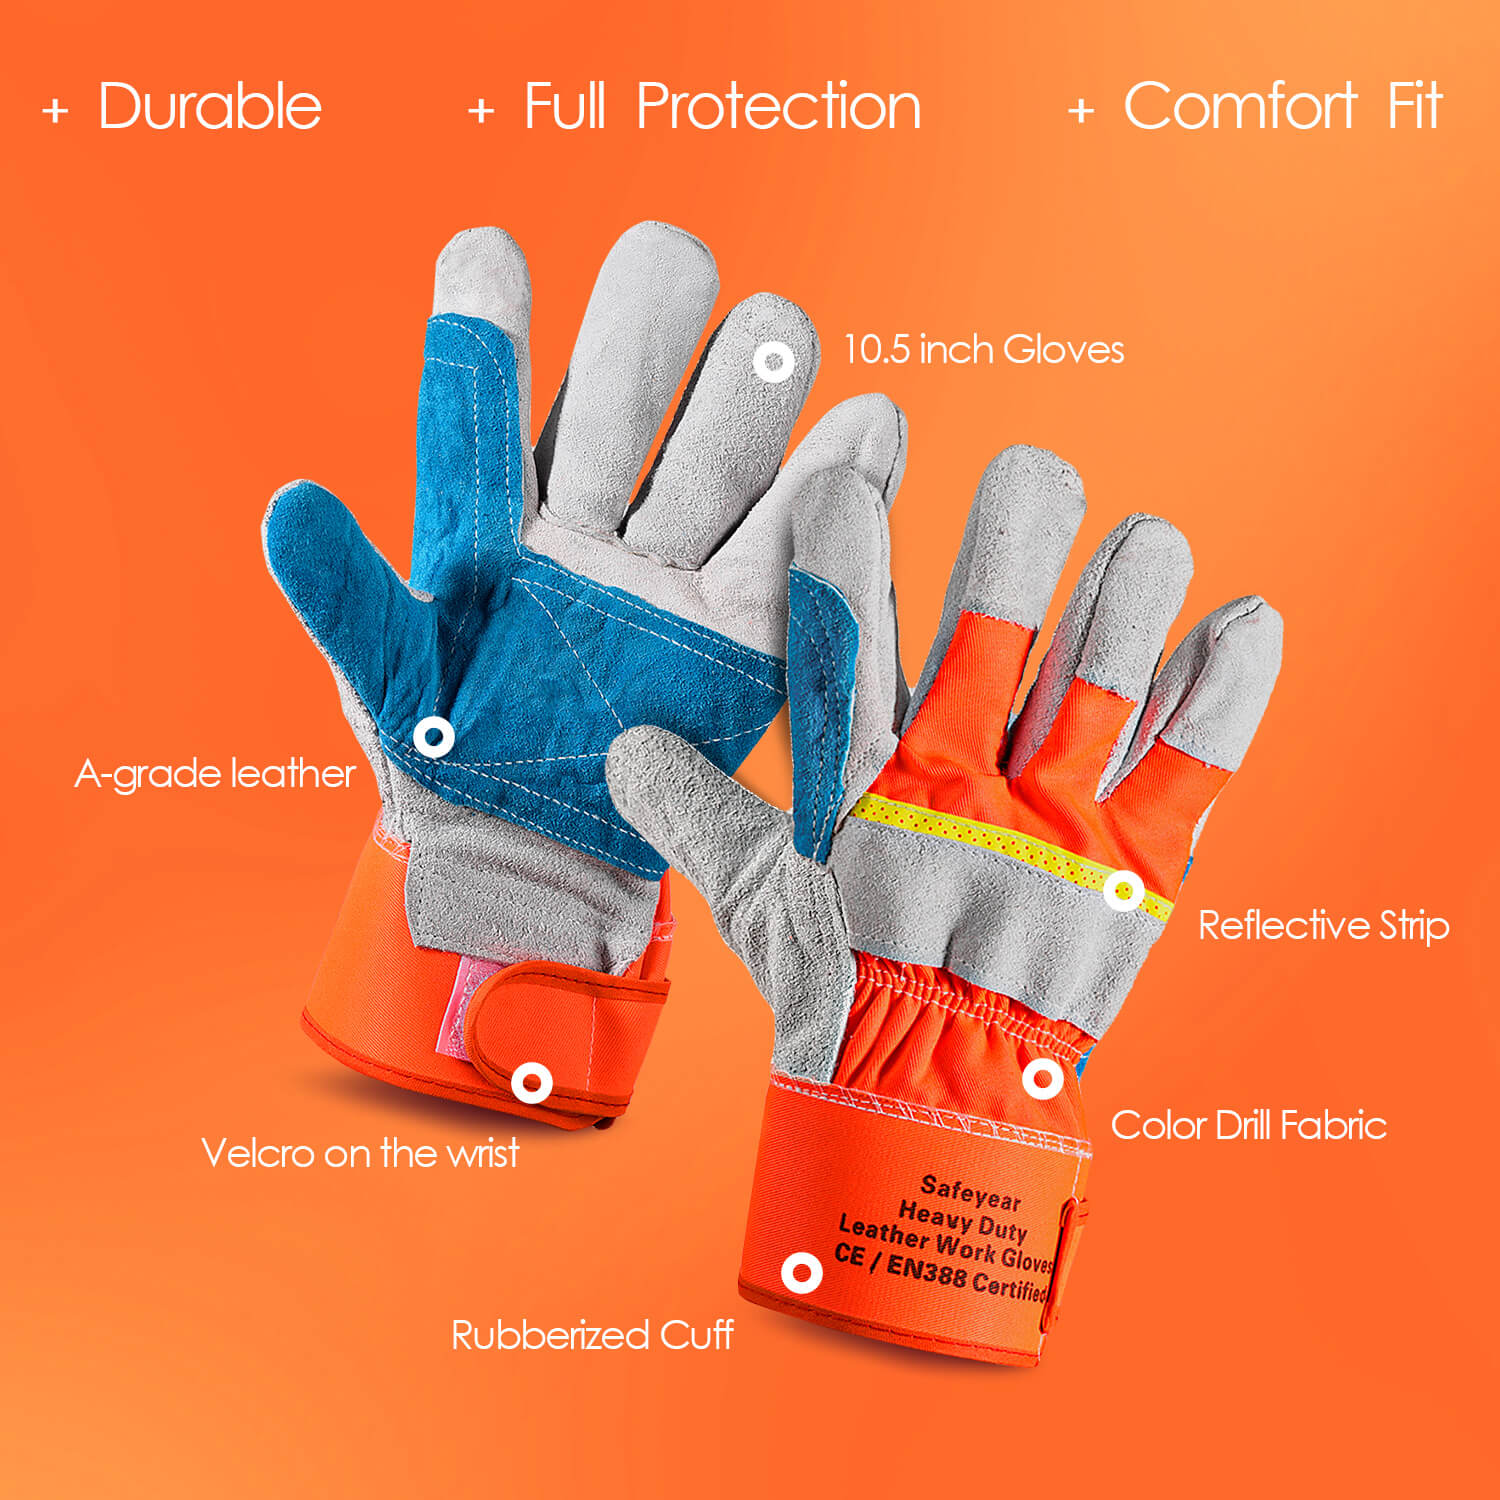 Safeyear Gardening Leather Safety Gloves, Heavy Duty Work Gloves for Men & Women (2 Pairs)